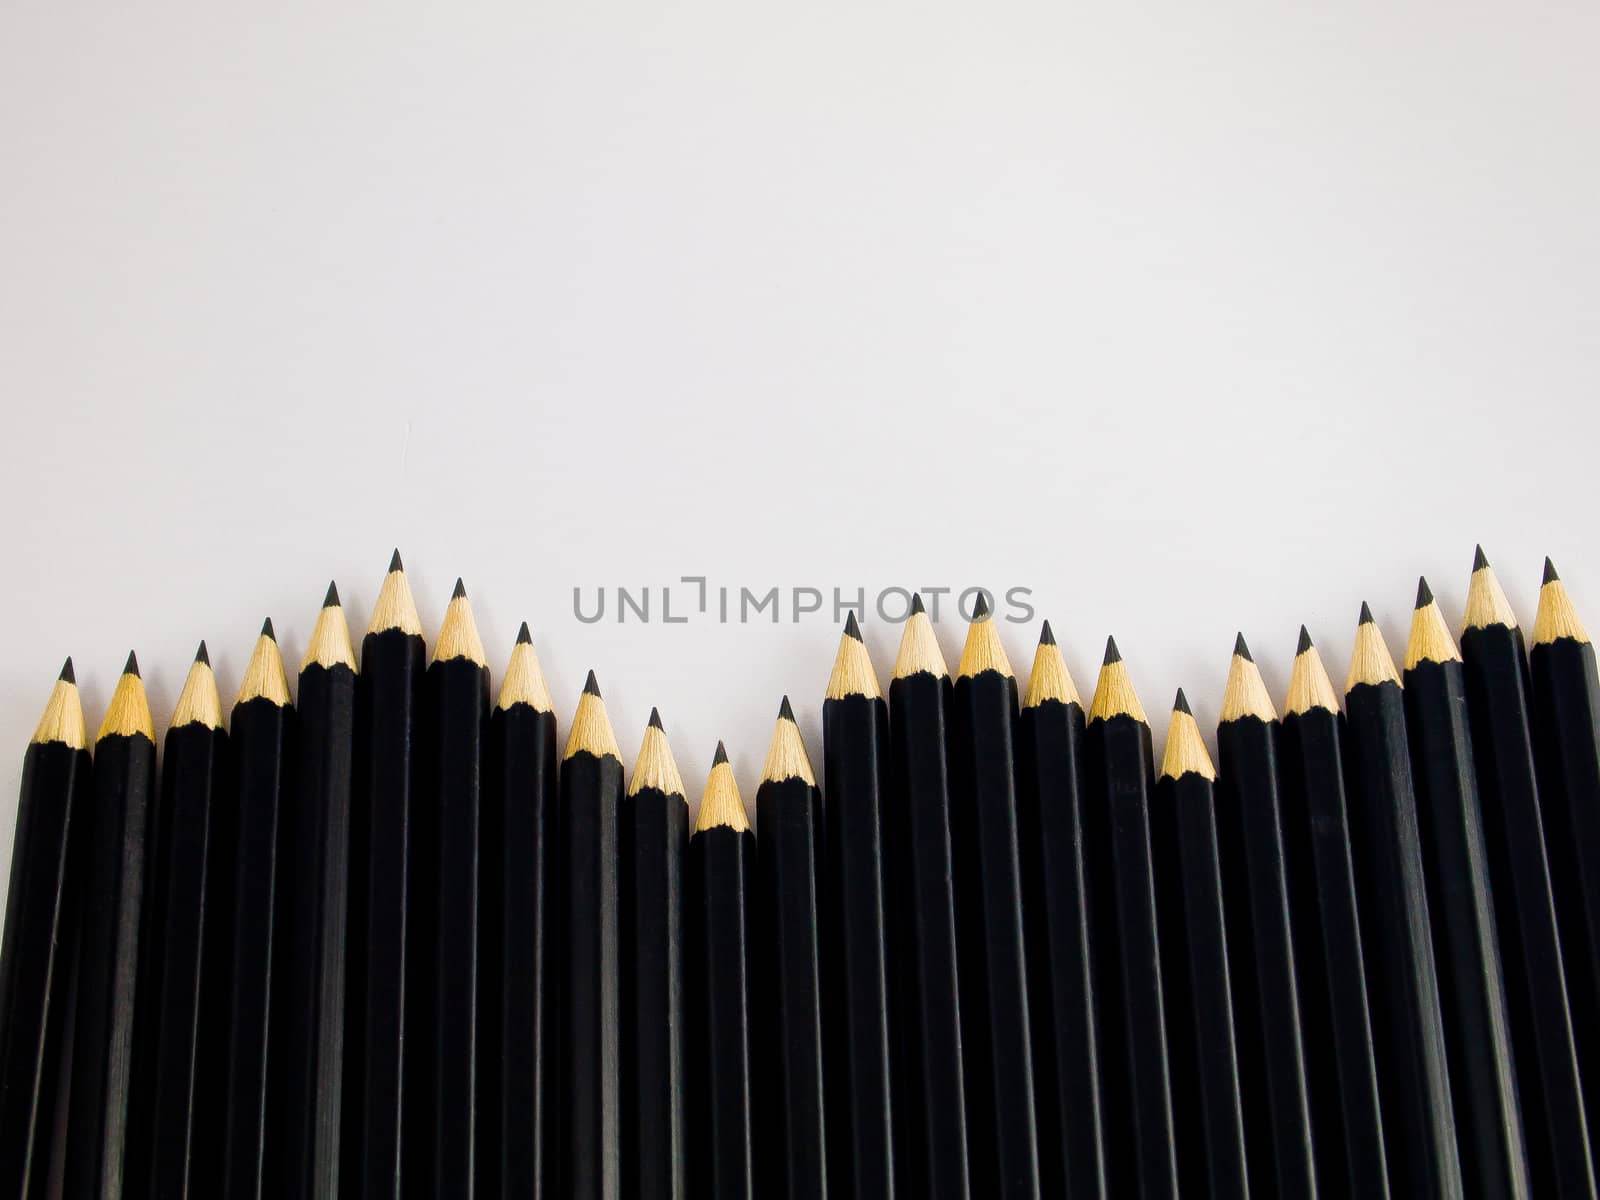 Wave of black pencils by gjeerawut